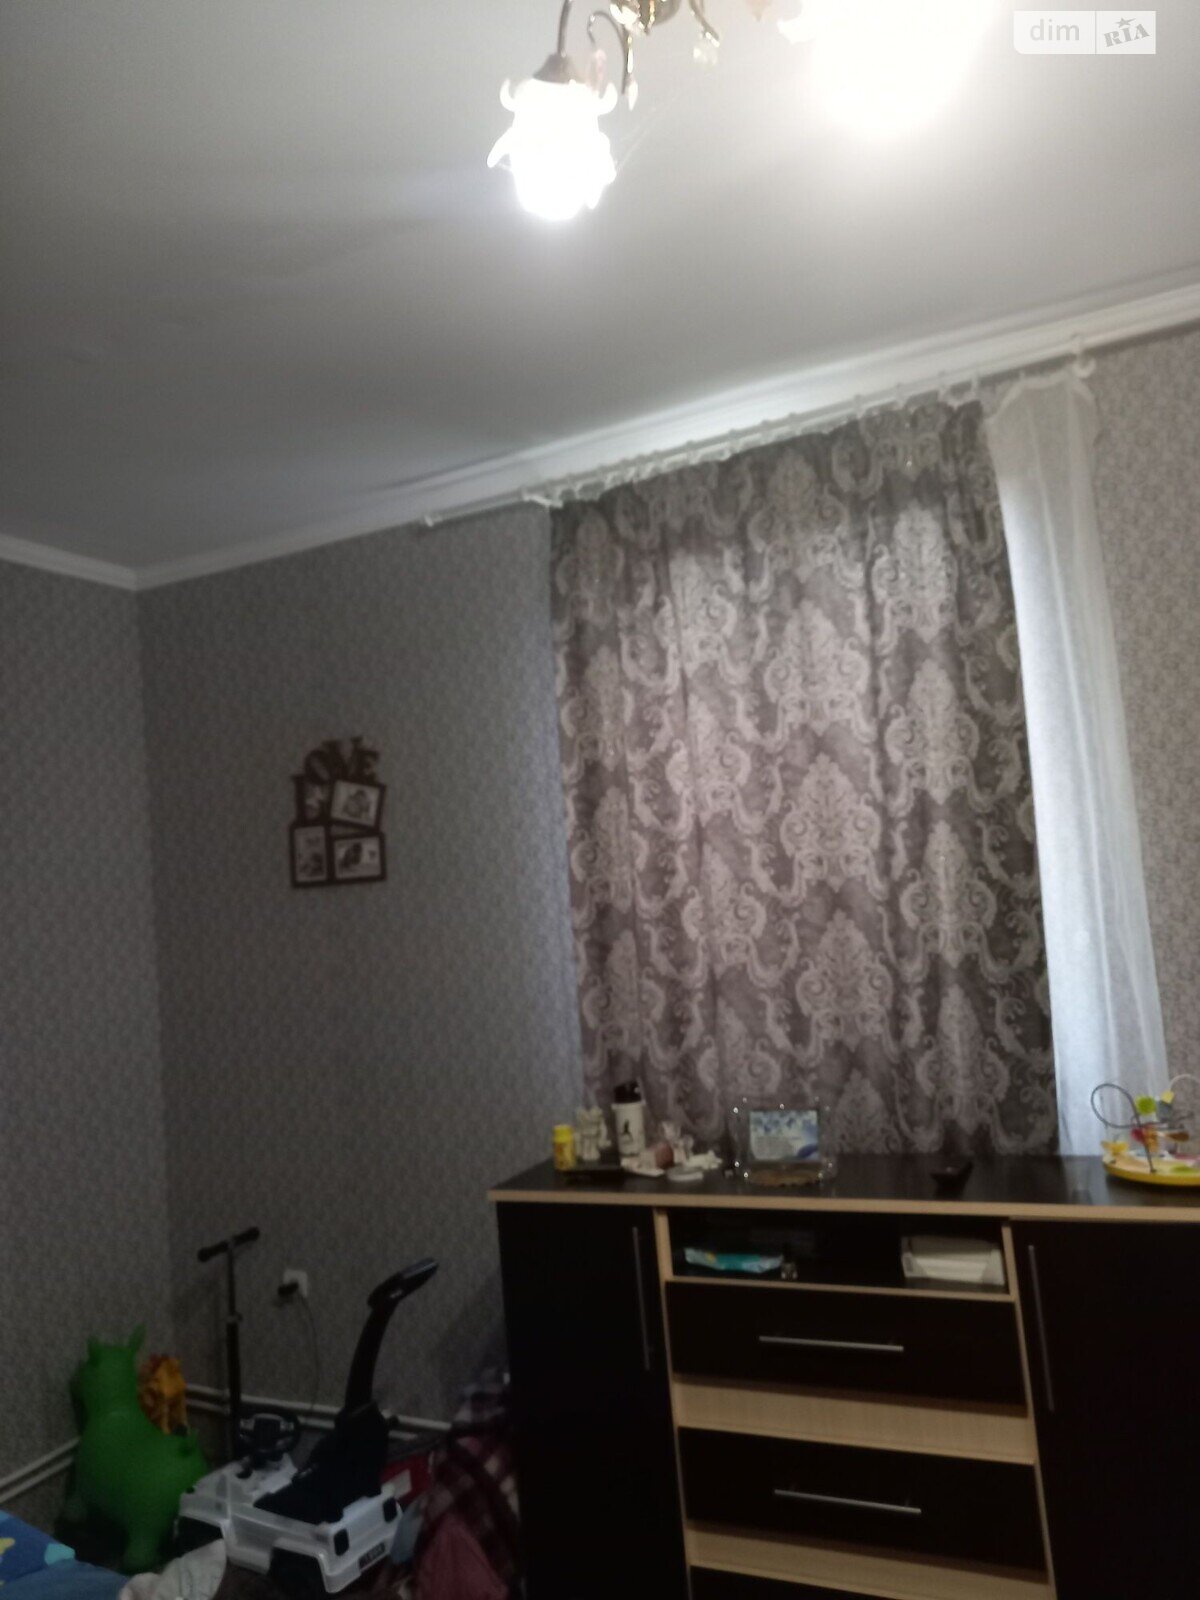 Продажа части дома в Здолбунове, улица Дмитрия Яворницкого, 3 комнаты фото 1